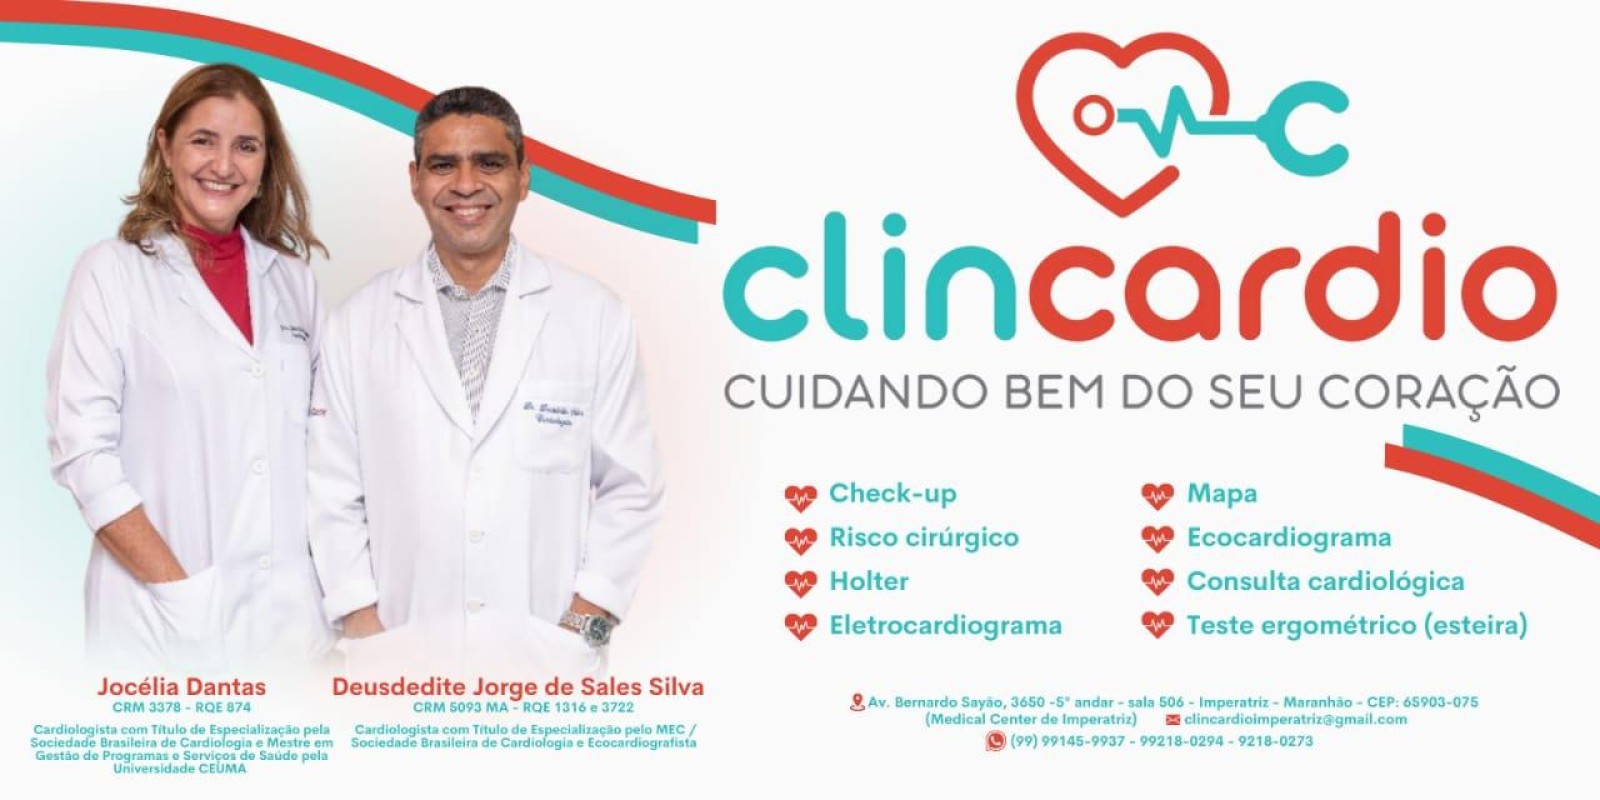 Clincardio - Cuidando bem do seu coração